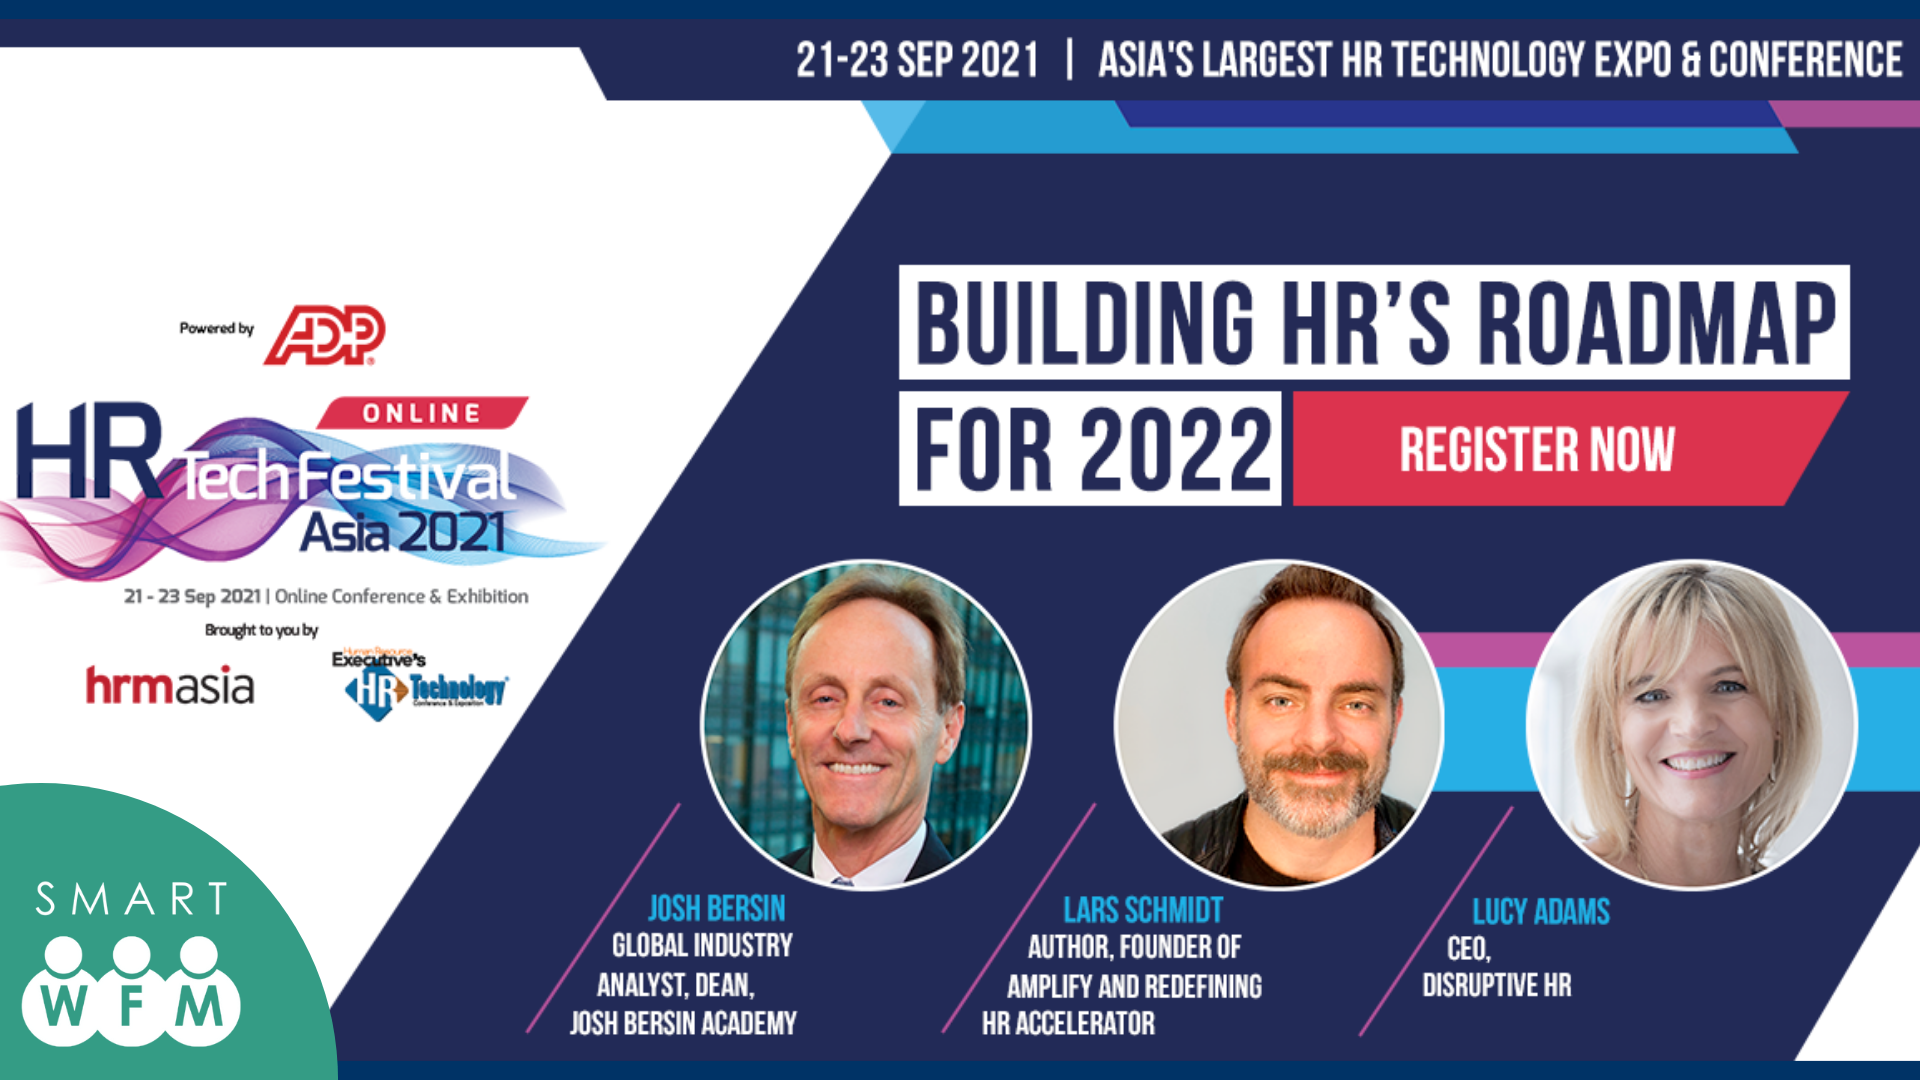 HR Tech Festival Asia Online 2021 x Smart WFM